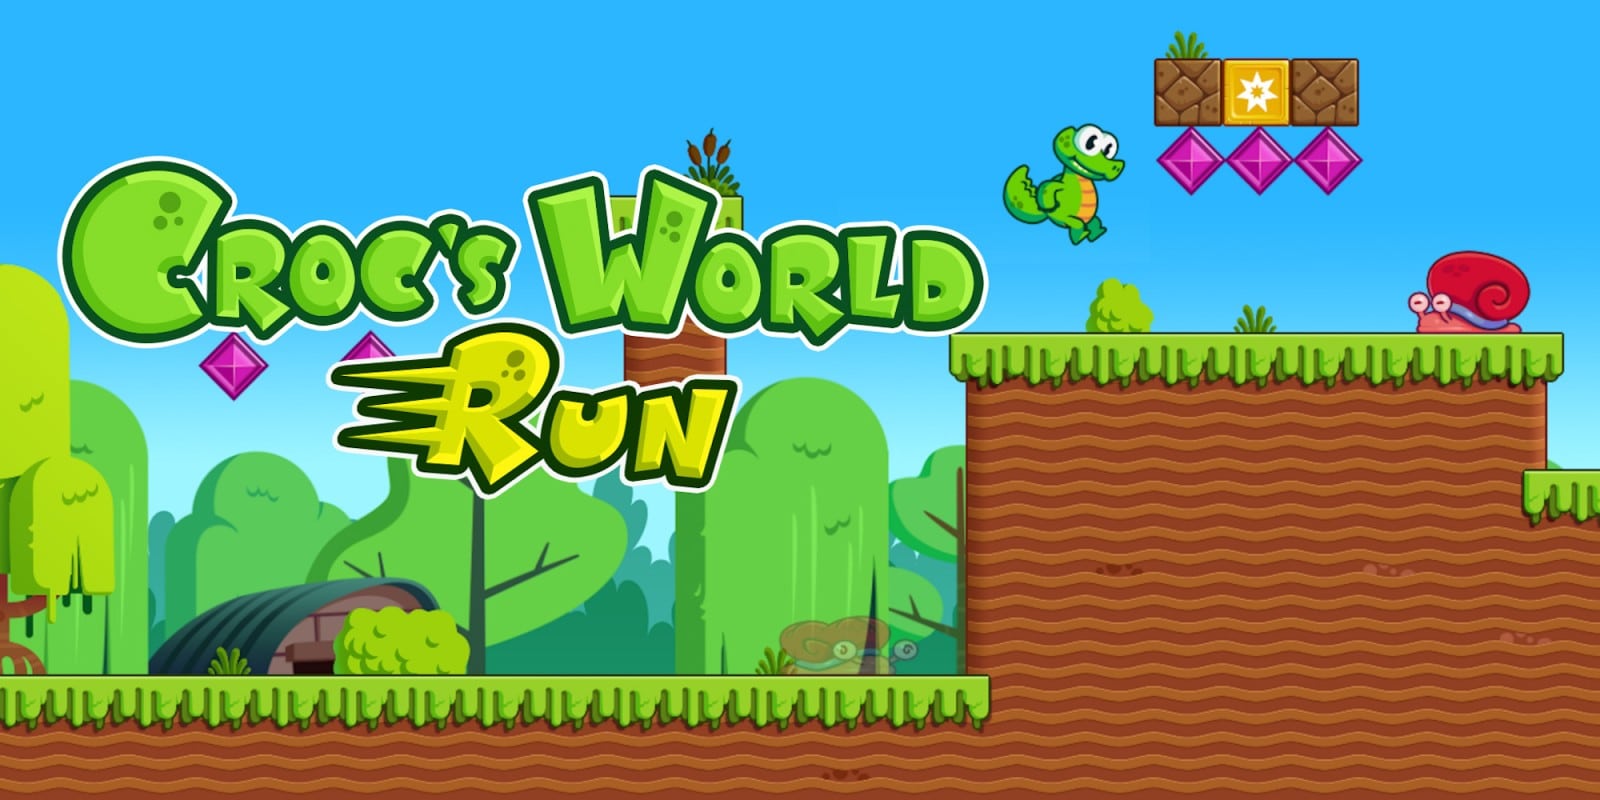 Croc’s World Run